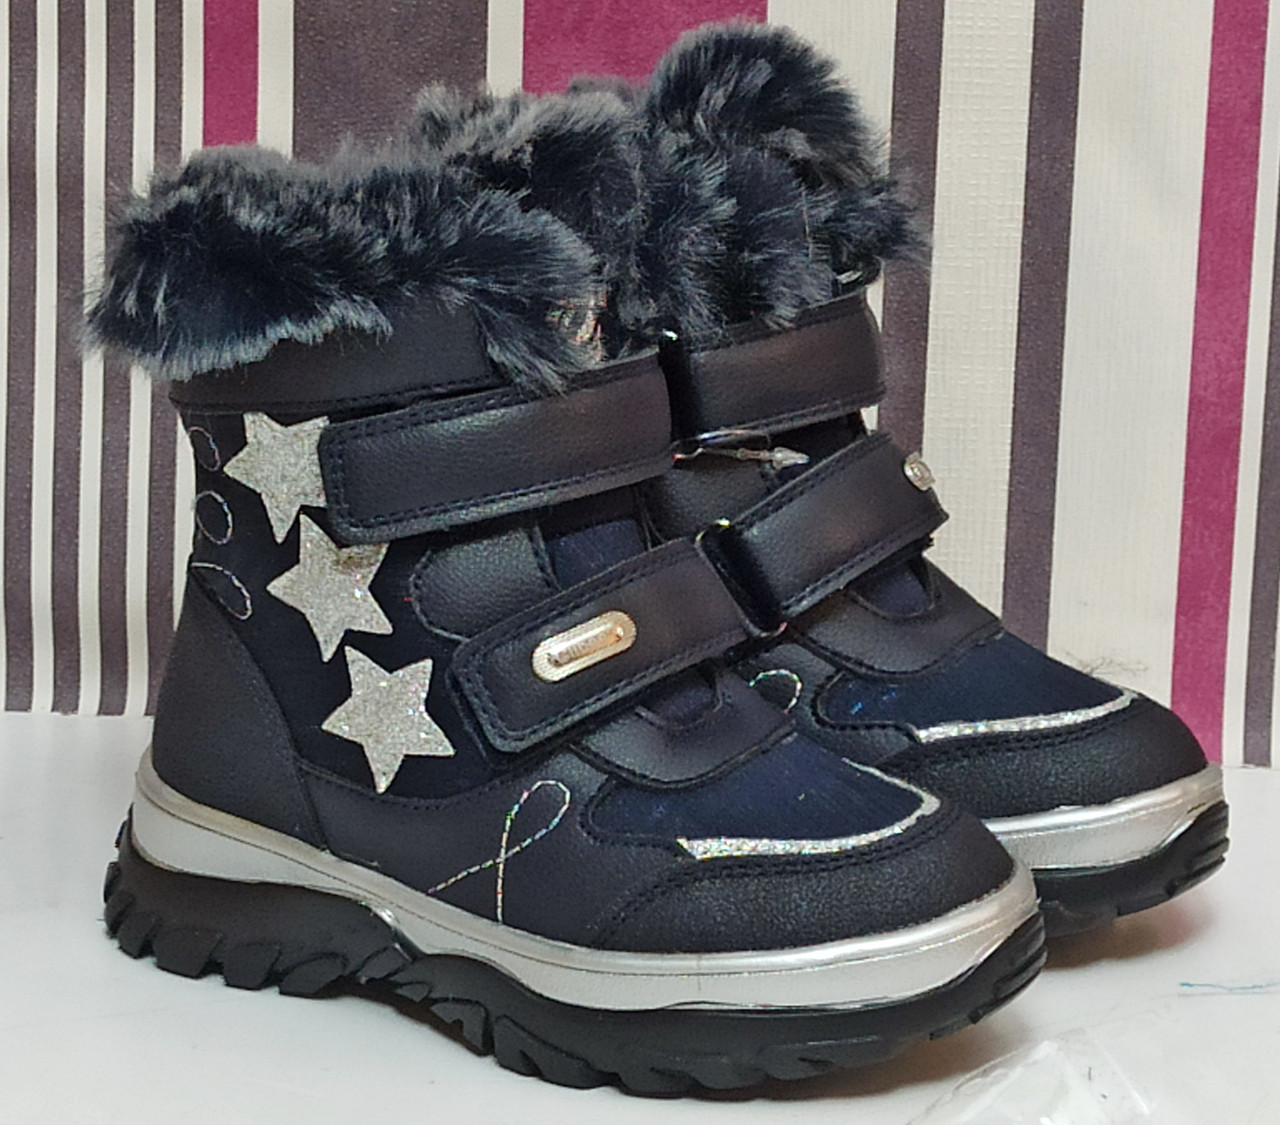 Дитячі зимові черевики для дівчинки на овчині Clibee Н232 сині. розміри 26-27